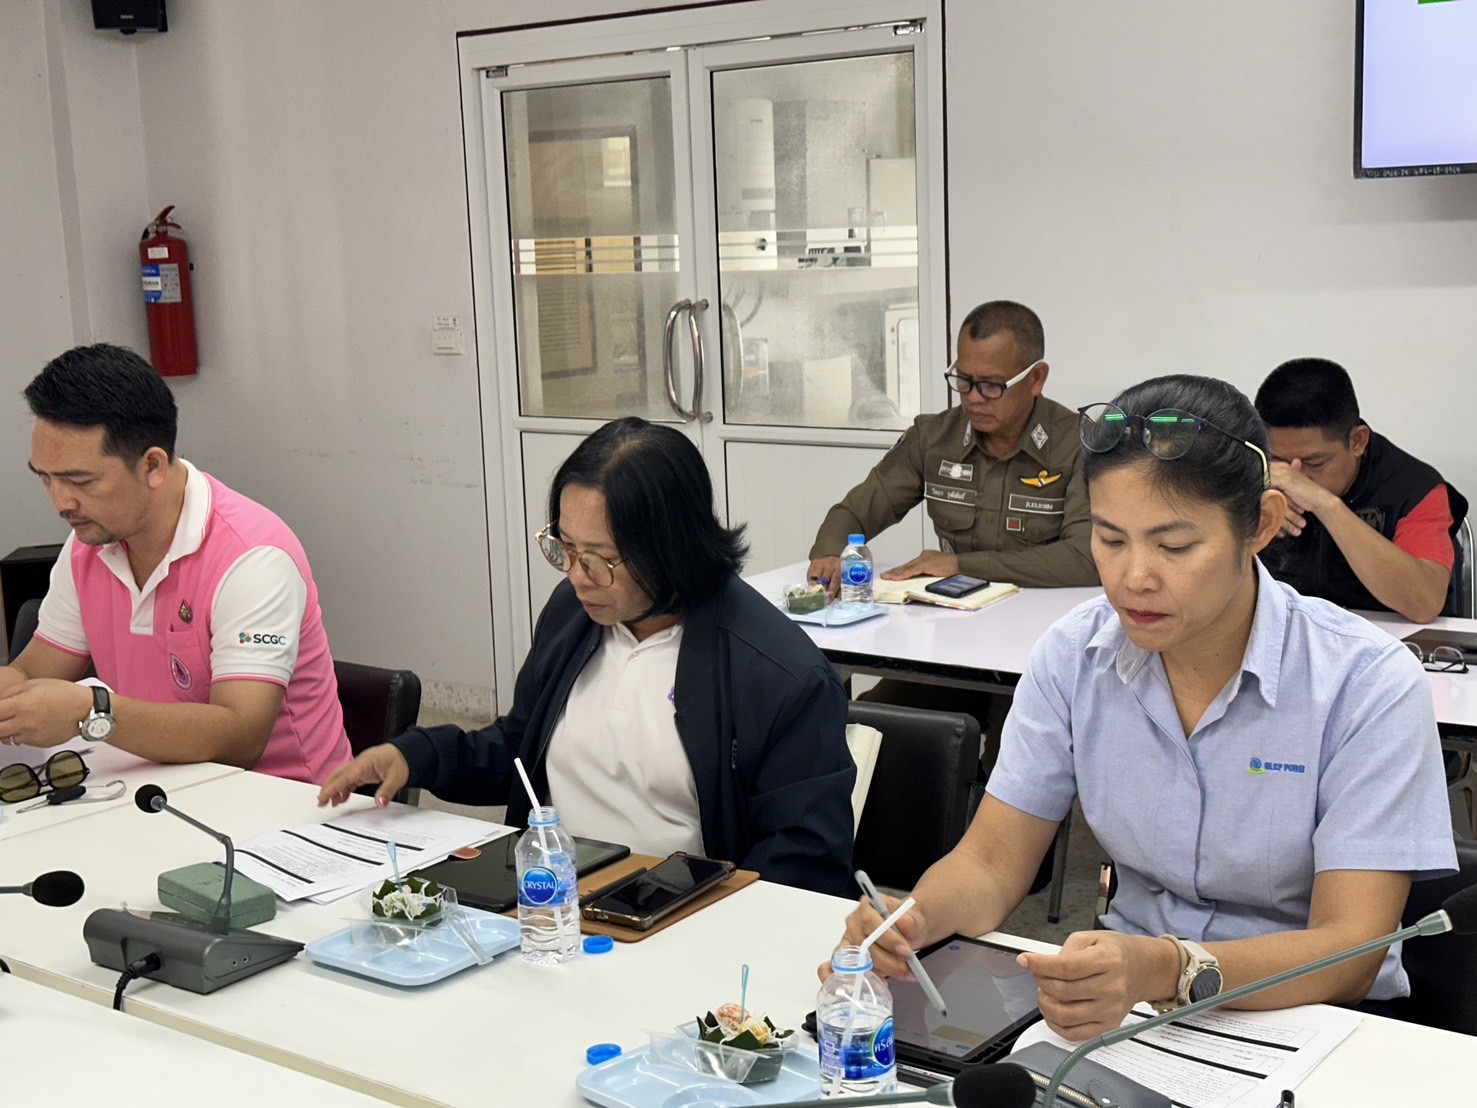 ร่วมประชุมคณะกรรมการตรวจสอบและติดตามการบริหารงานตำรวจ สถานีตำรวจภูธรมาบตาพุด (กต.ตร.สภ.มาบตาพุด) ครั้งที่ 2/2567 